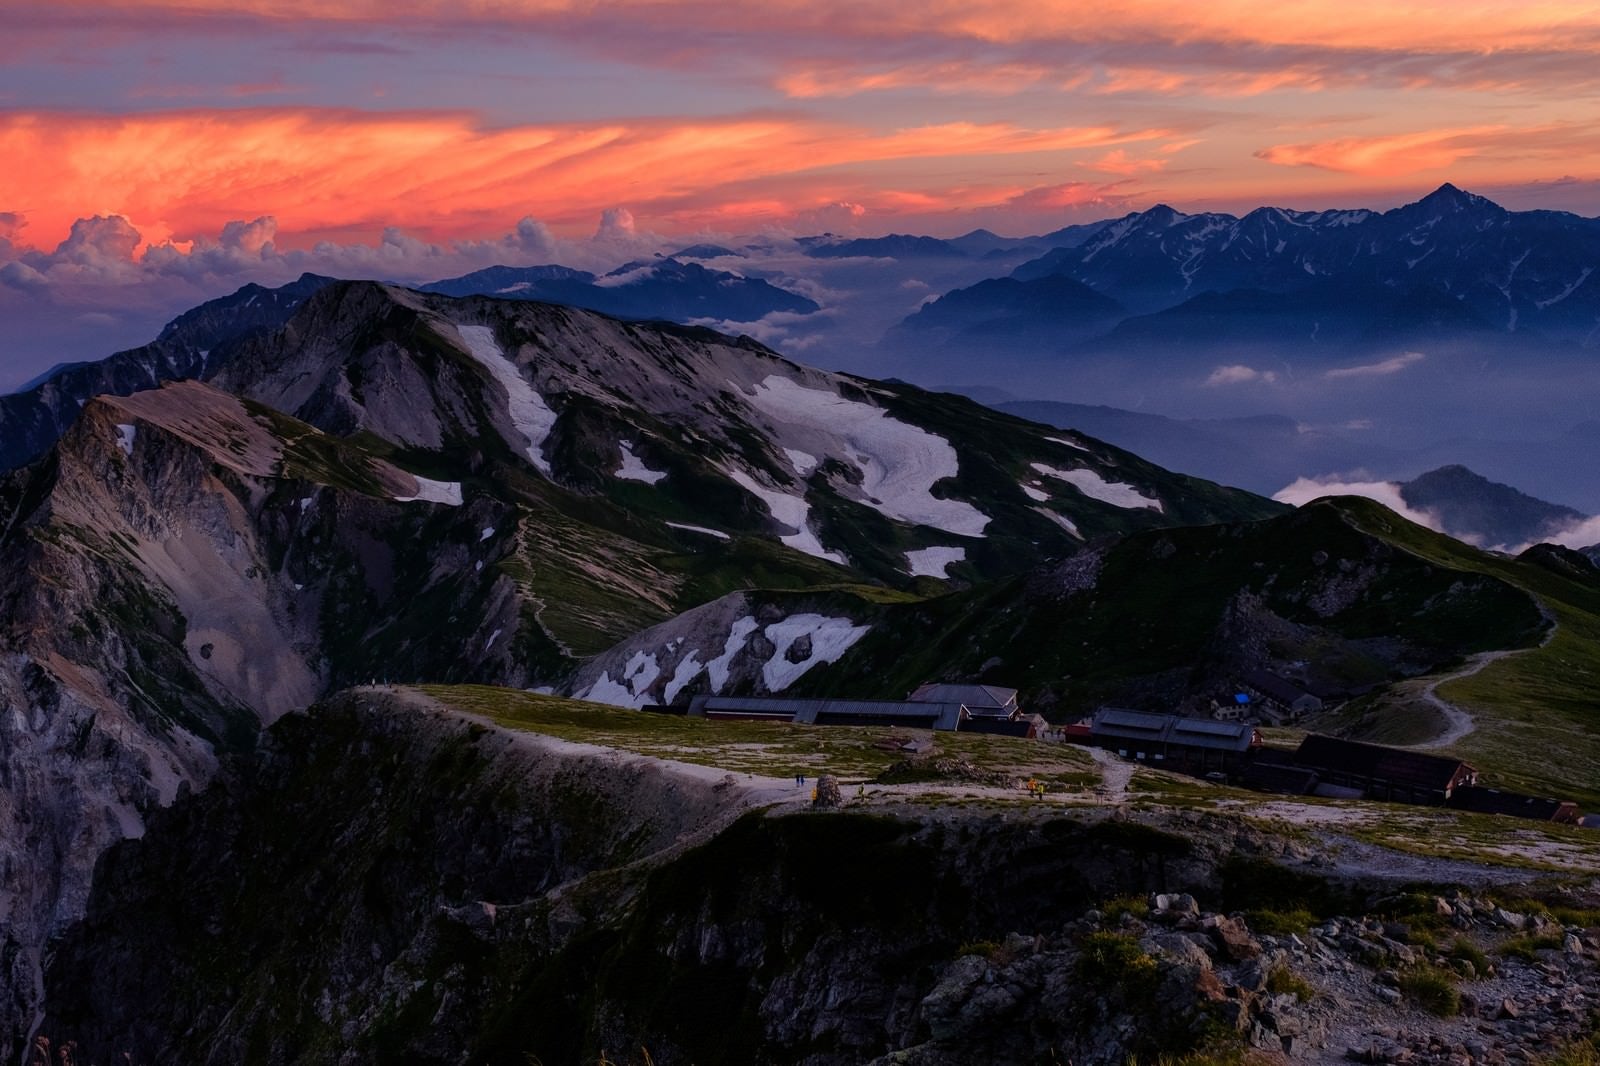 「夕日に染まる杓子岳と白馬鑓ヶ岳と立山連峰」の写真